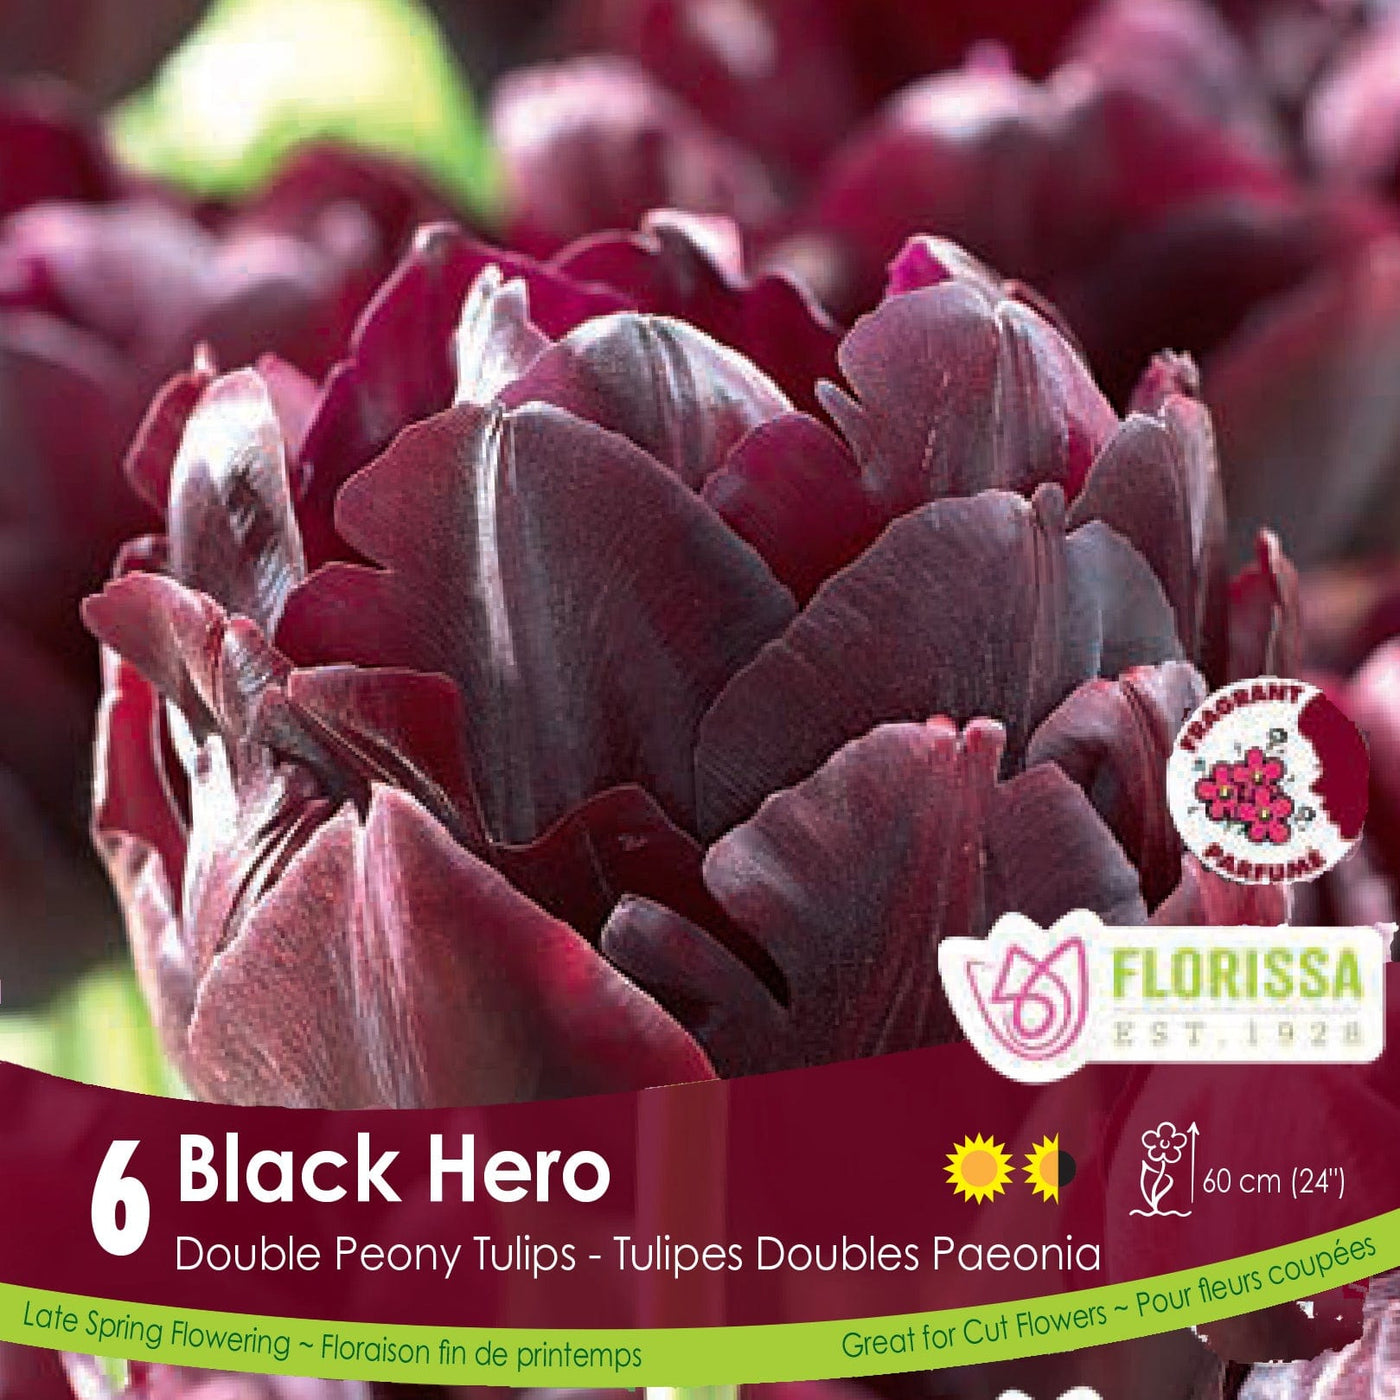 Burgundy Double Peony Tulip Black Hero 